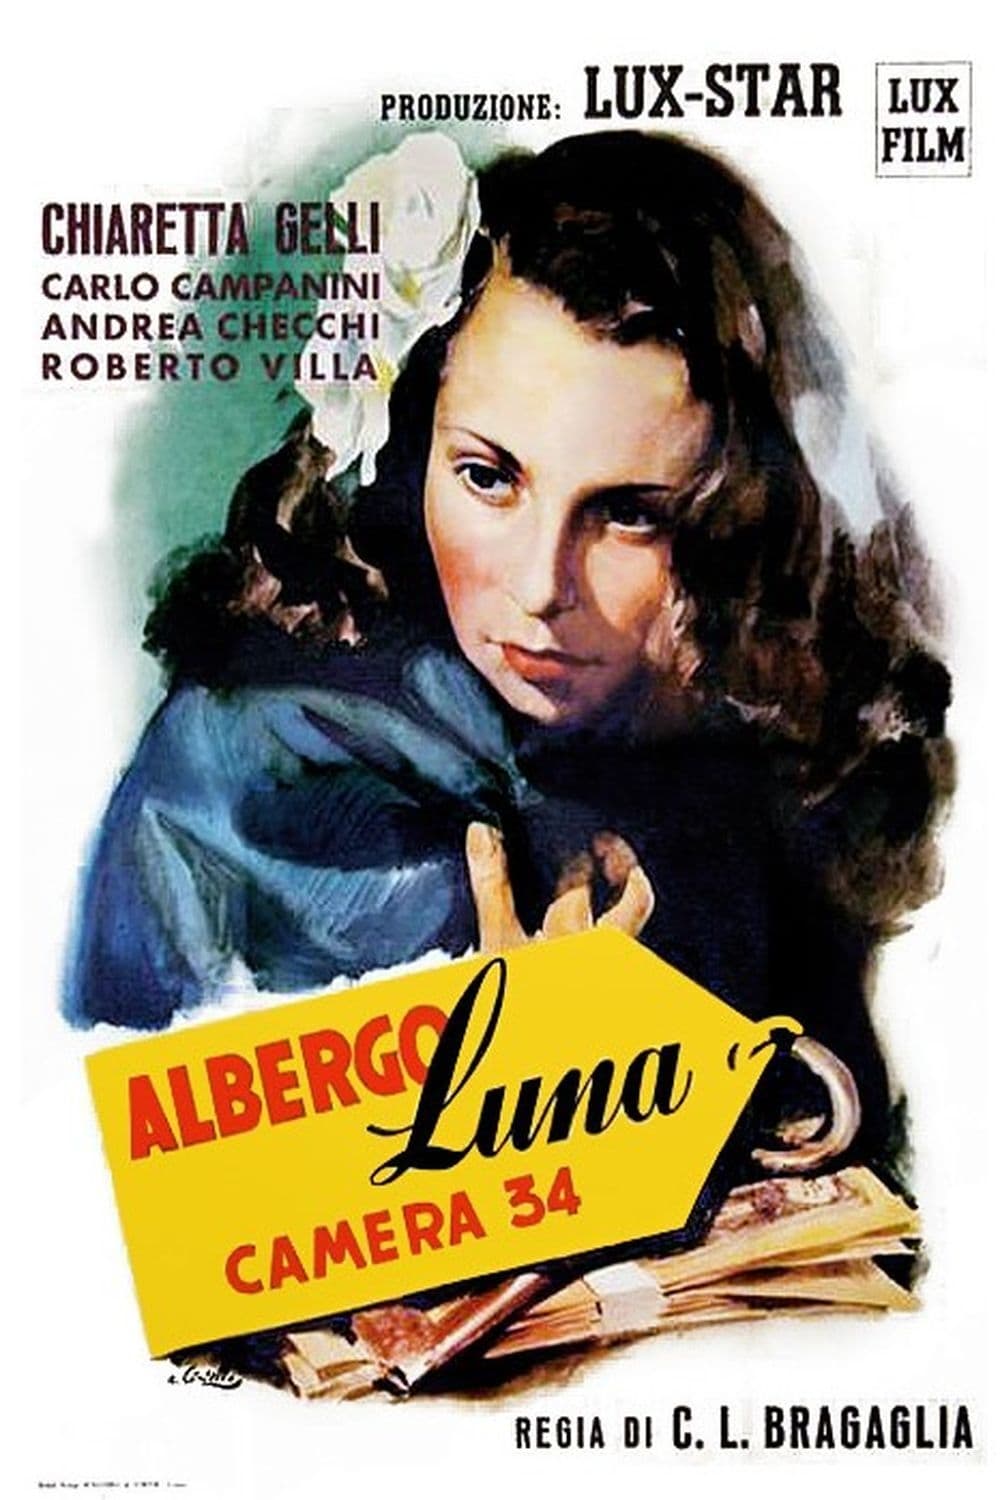 Albergo Luna, camera 34 (1946)